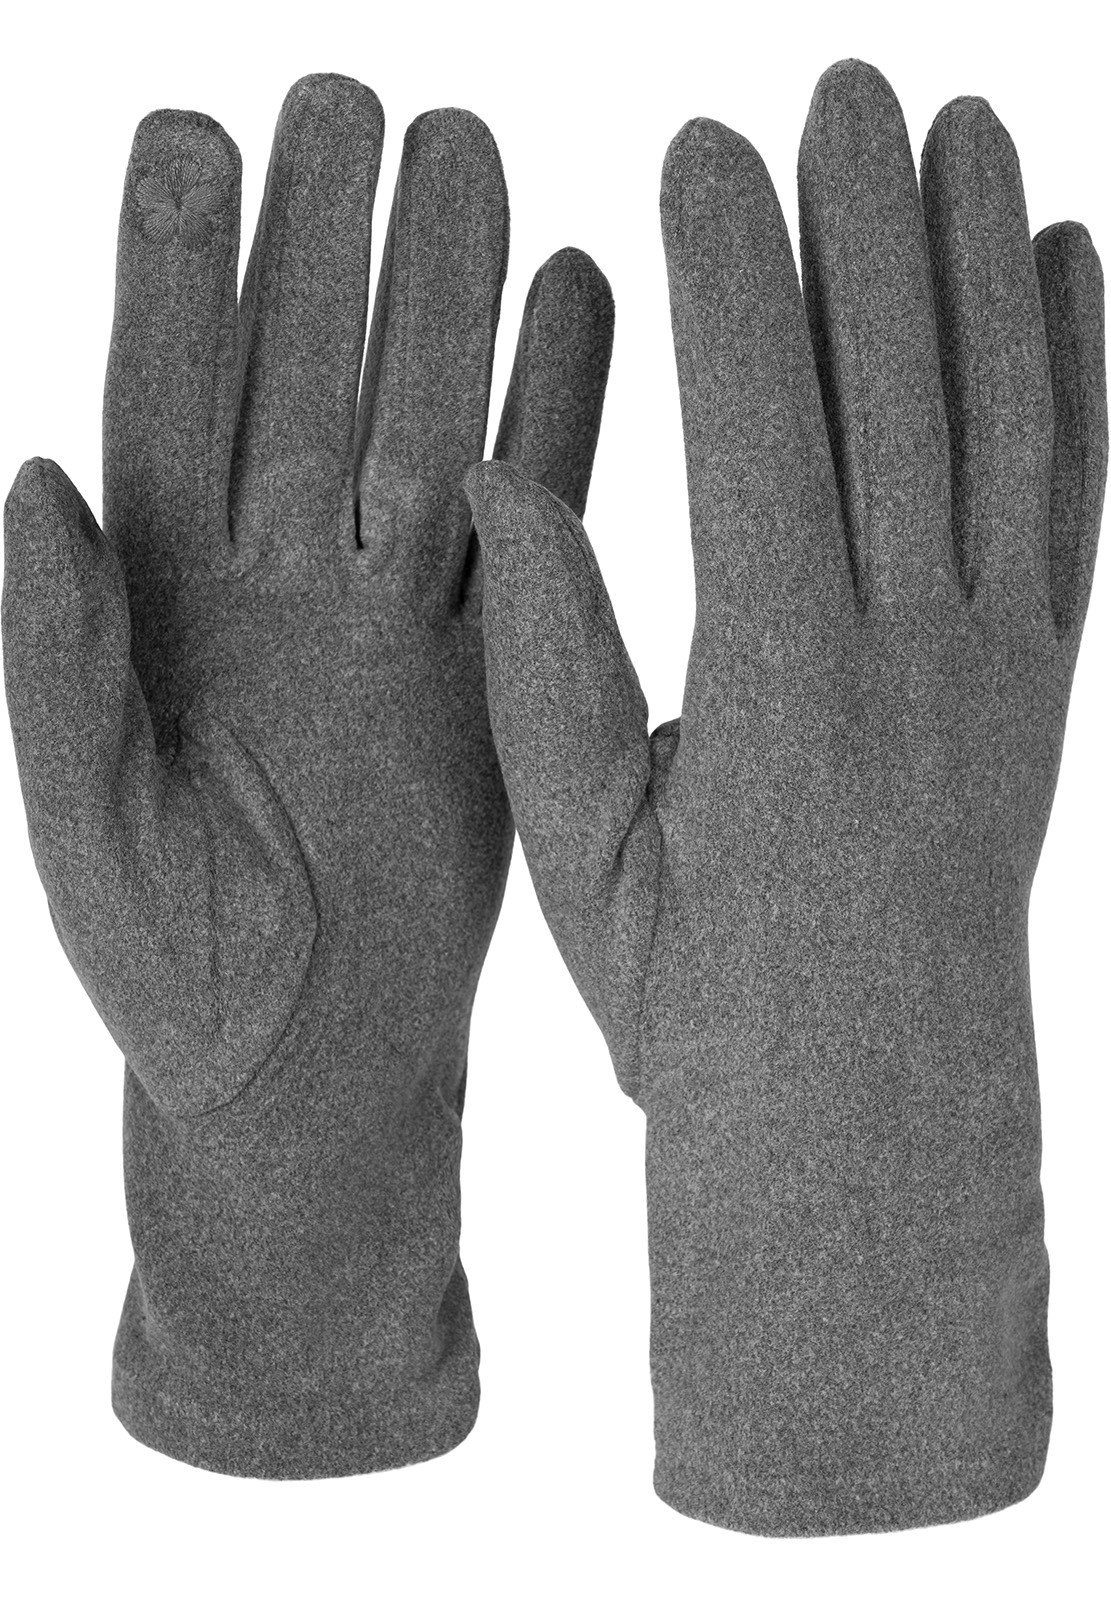 styleBREAKER Fleecehandschuhe Touchscreen Handschuhe seitlich gerafft Grau